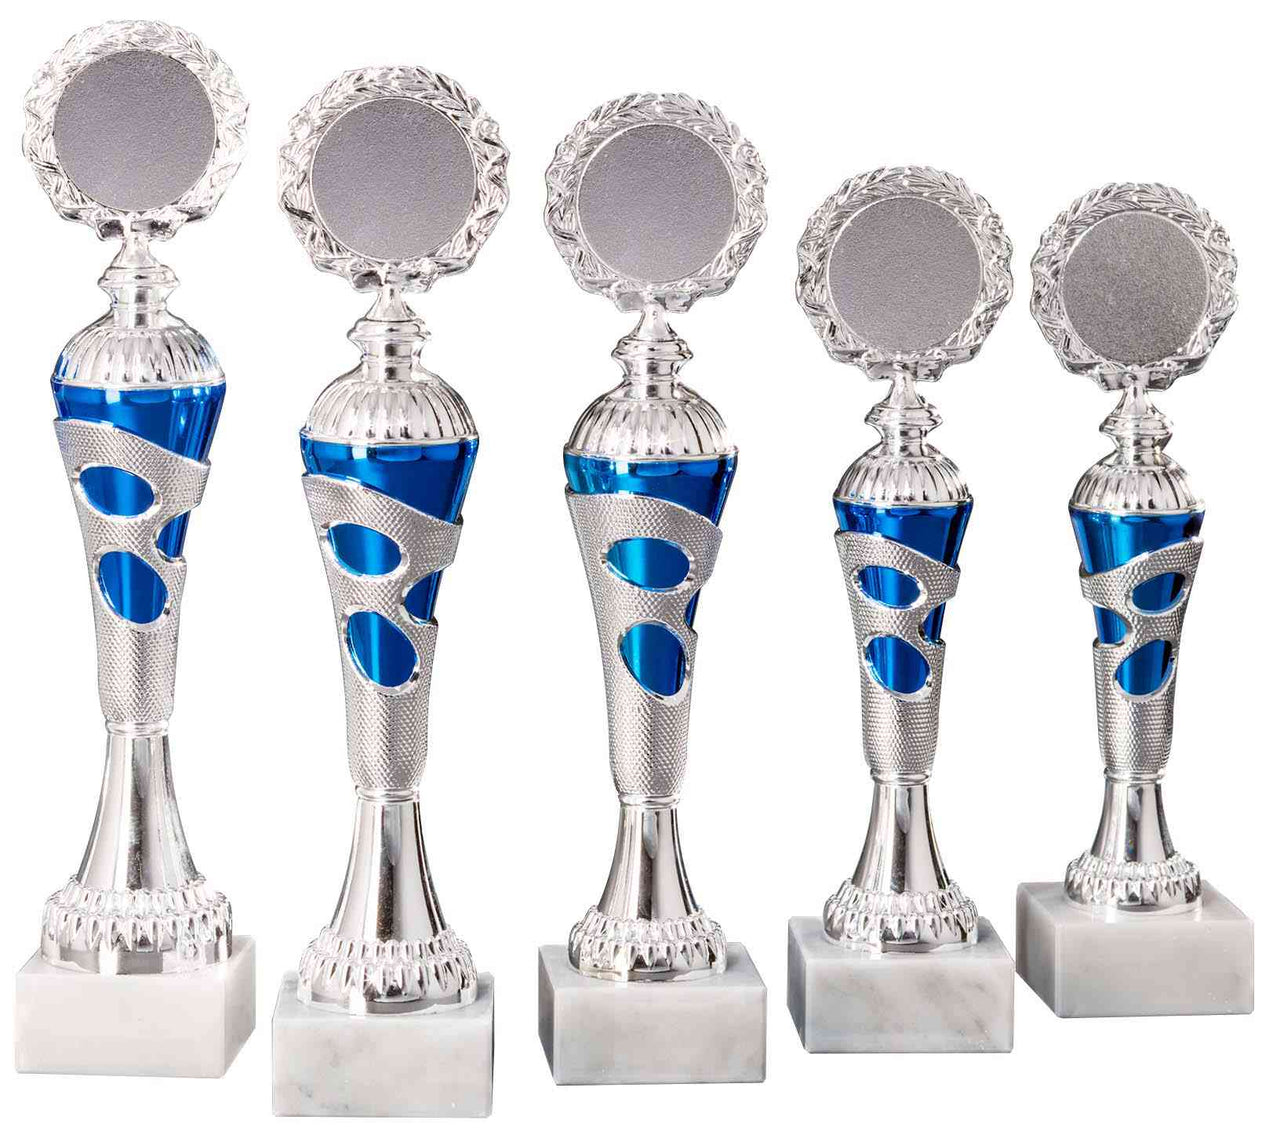 Fünf Pokale Kleve 5- er Pokalserie 255 mm – 308 mm PK754680-5-E50 mit dekorativen Mustern, jedes mit einer leeren, runden Silberplakette, die in einer Reihe auf weißem Hintergrund angeordnet ist.